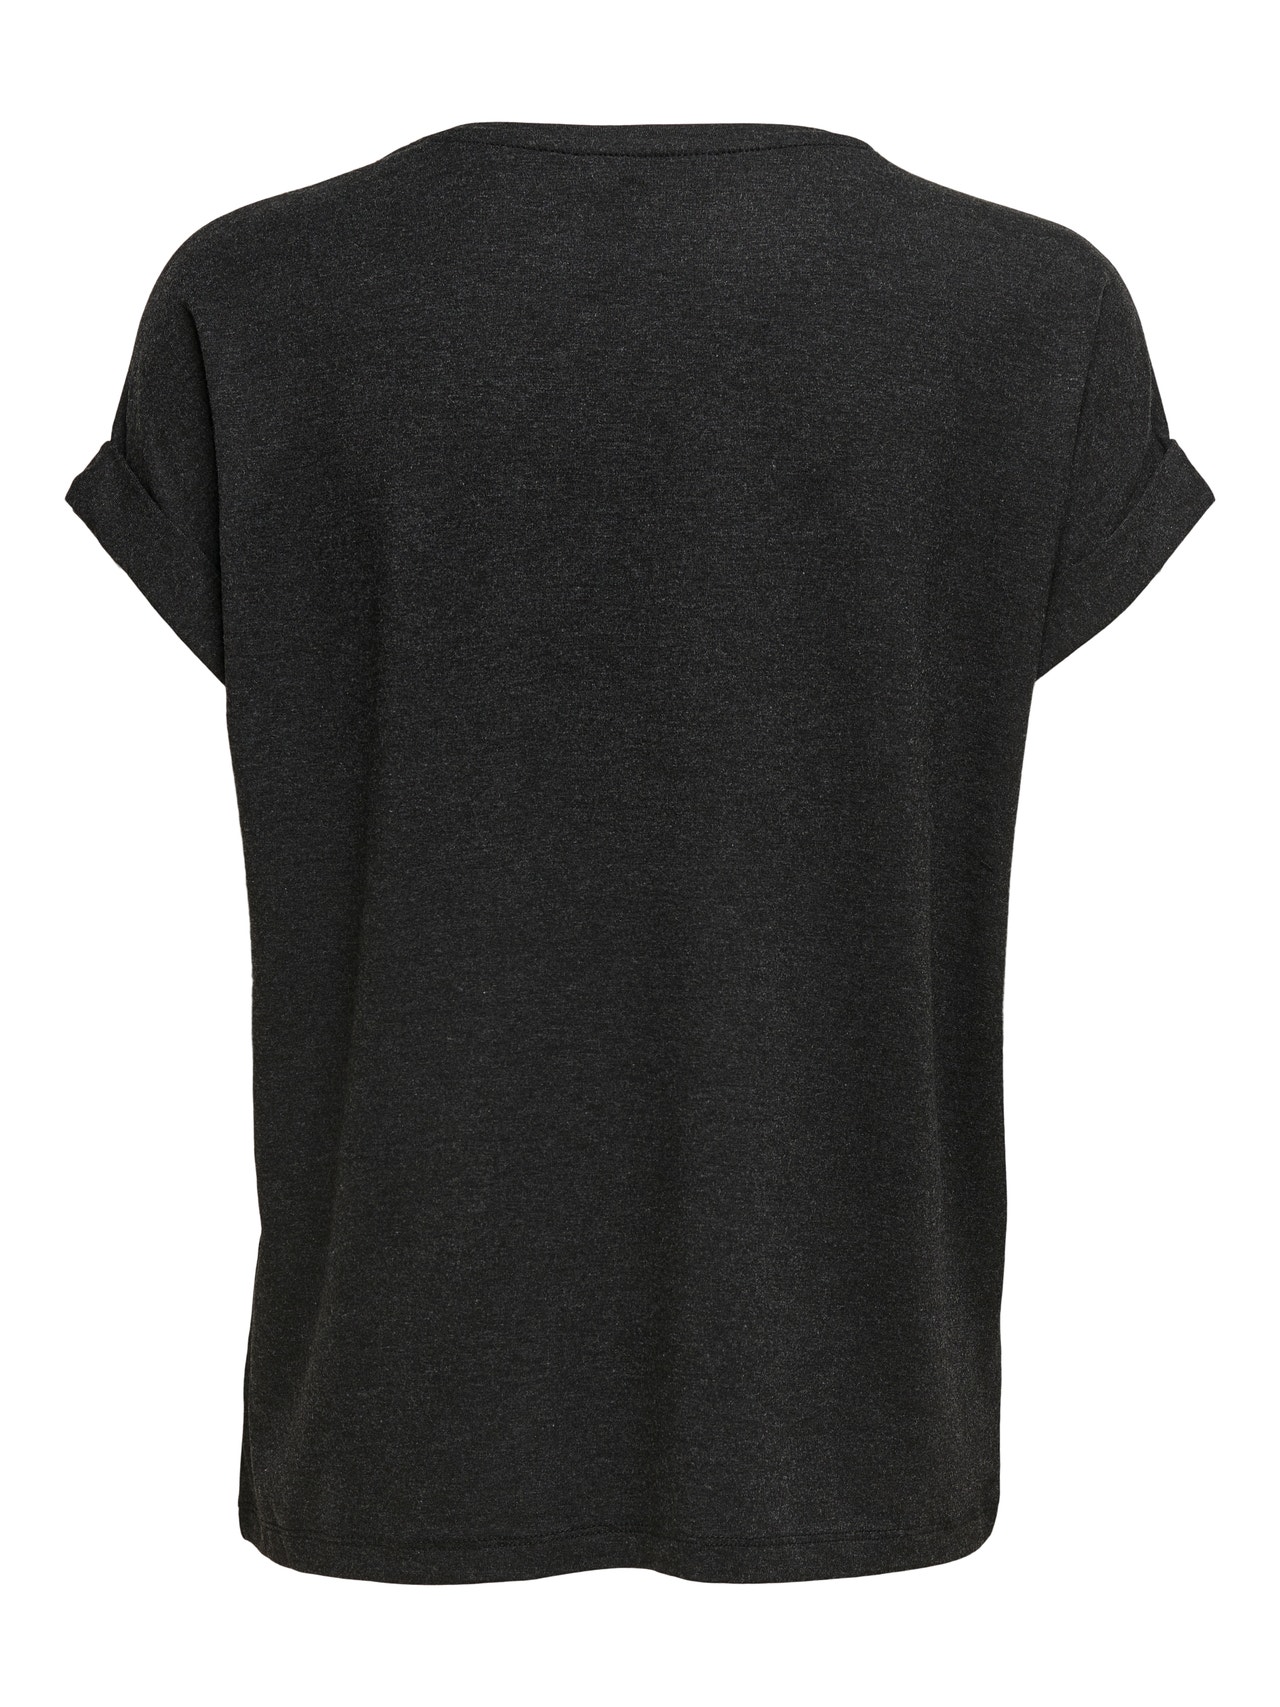 ONLY Loose fit T-shirt -Dark Grey Melange - 15106662